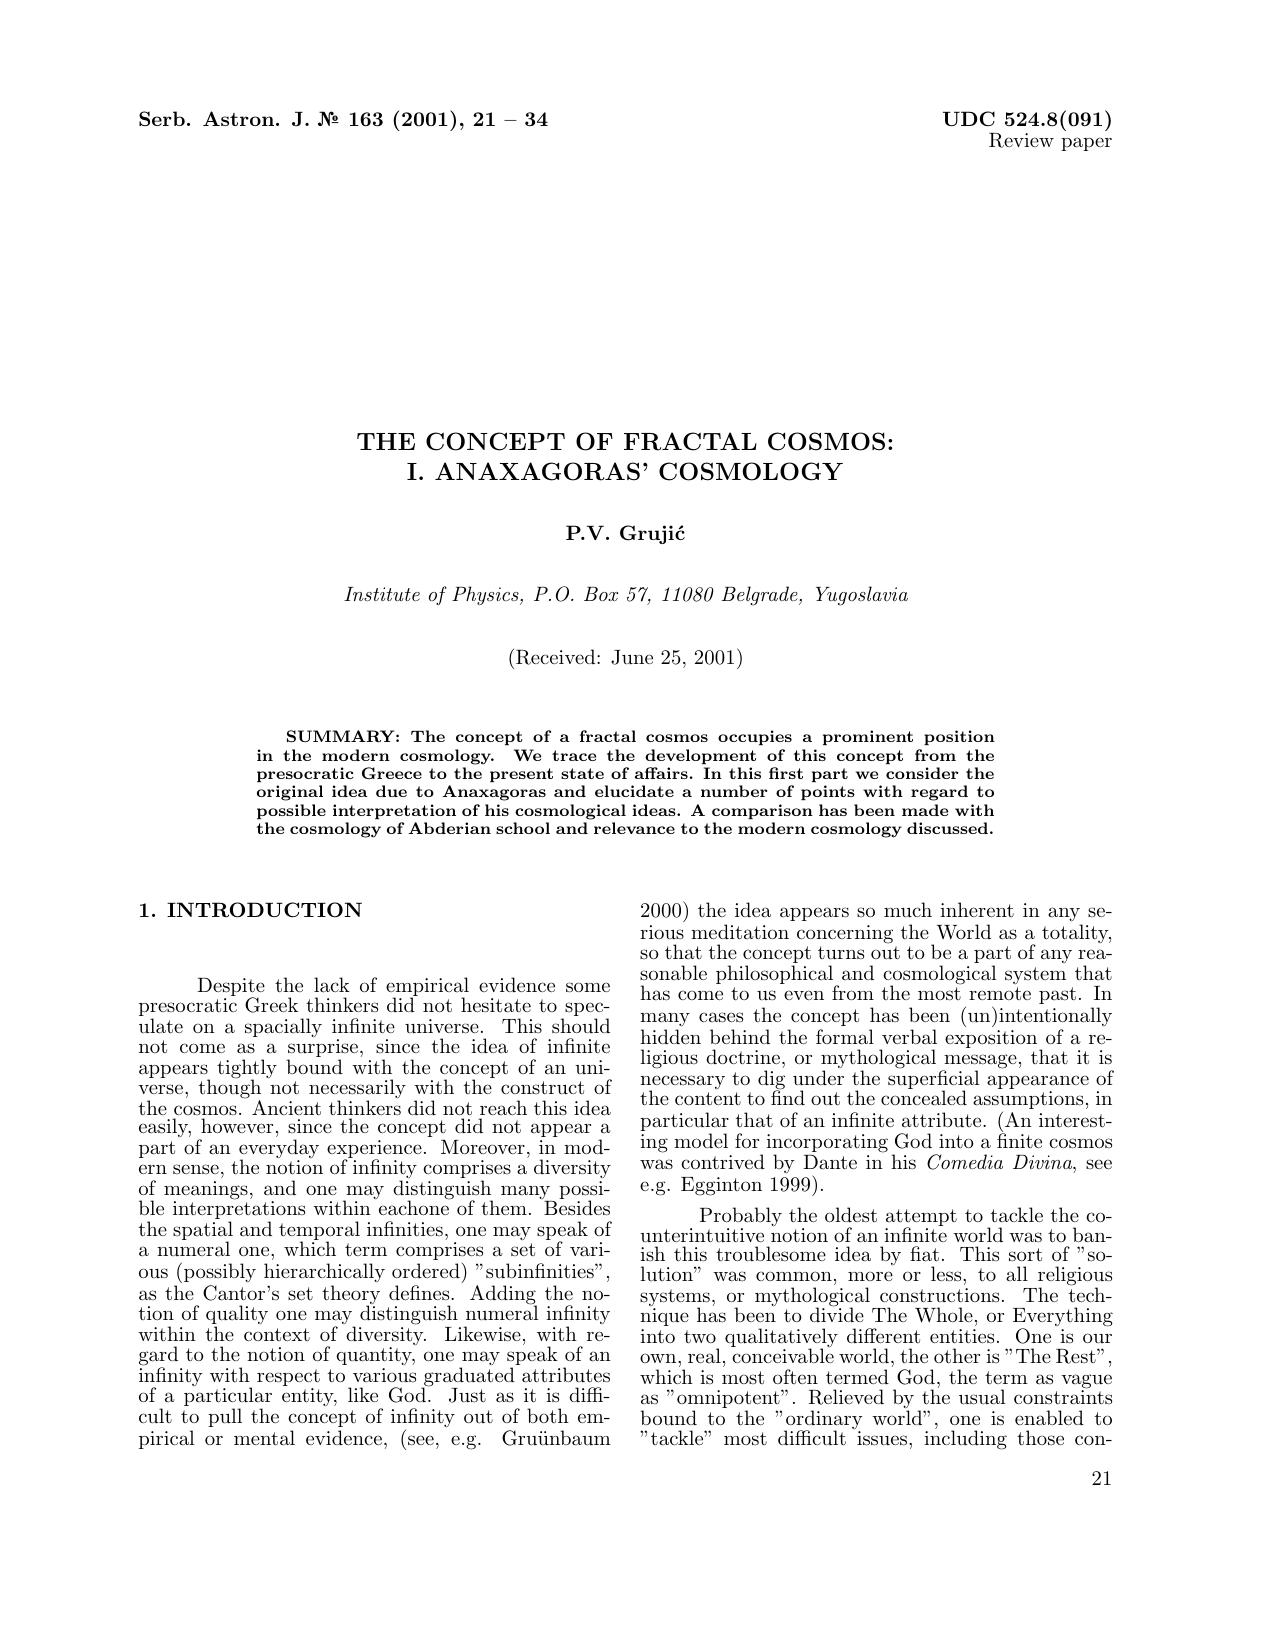 Concept Of Fractal Cosmos [Anaxagoras' Cosmology] - Paper